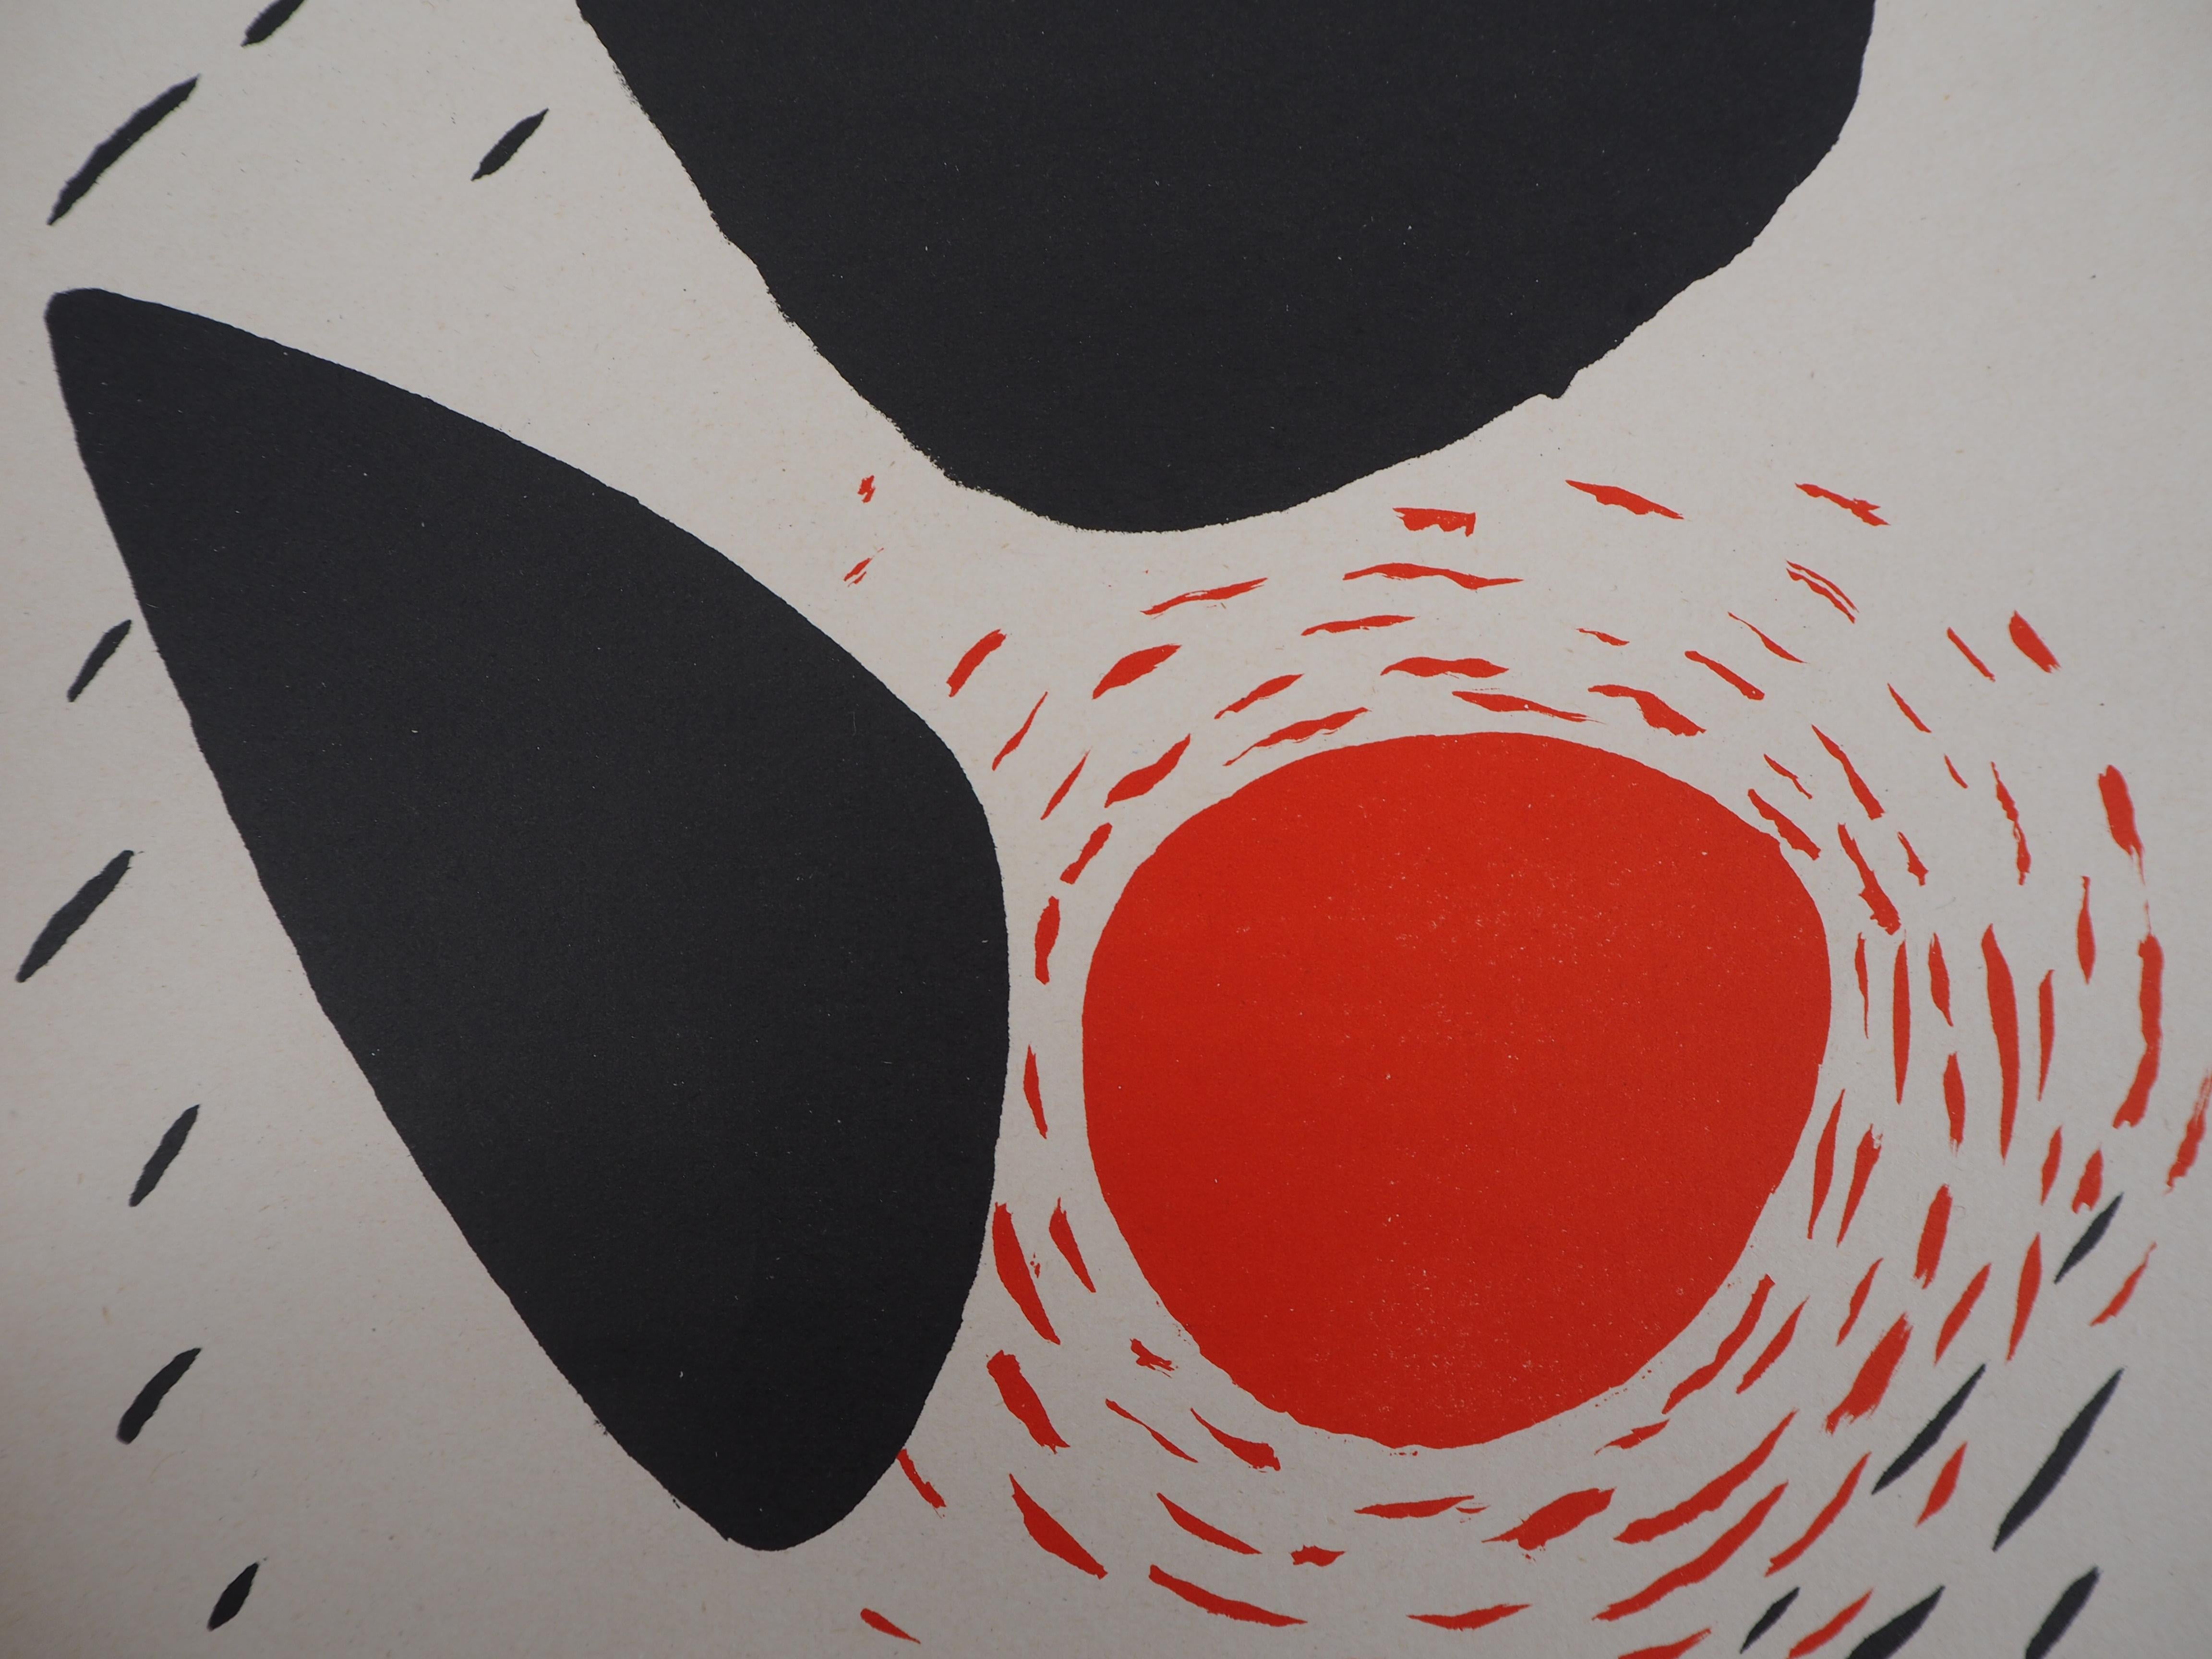 Alexander Calder
Felsen und Sonne, 1952

Original-Lithographie (3 Farbsteine)
Gedruckt in der Werkstatt von Mourlot
Auf Pergament 31 x 24 cm (ca. 12,2 x 9,5 in)
Herausgegeben von San Lazzaro im Jahr 1952

Sehr guter Zustand, Rand des Blattes leicht